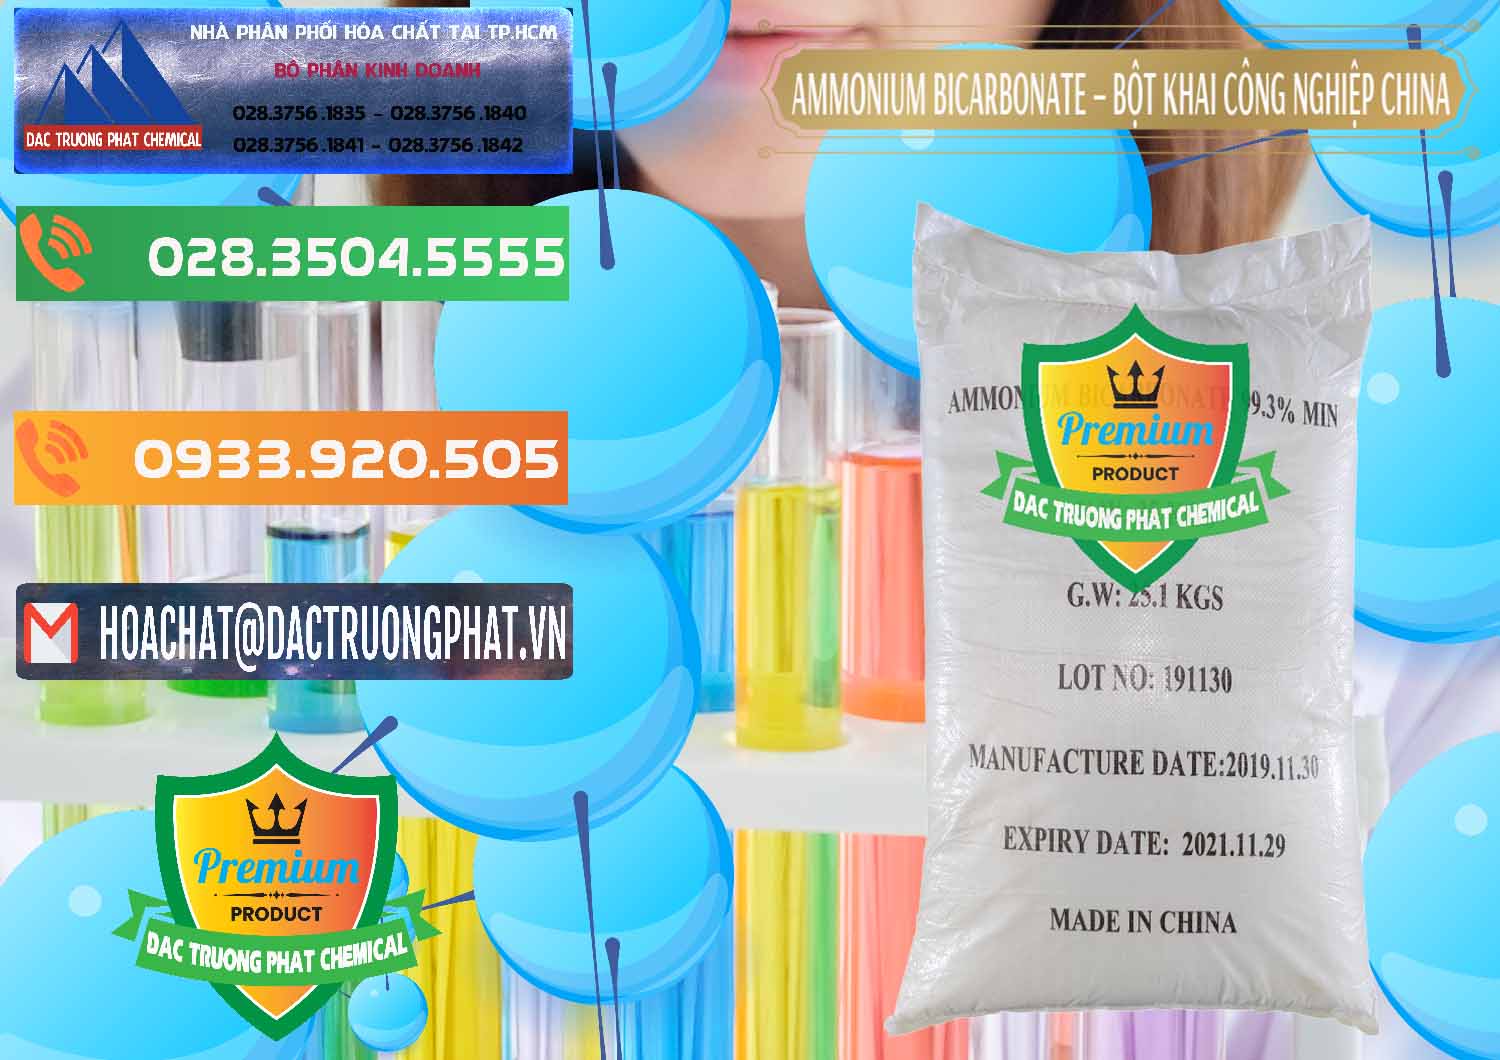 Chuyên phân phối và bán Ammonium Bicarbonate – Bột Khai Công Nghiệp Trung Quốc China - 0020 - Chuyên phân phối _ cung cấp hóa chất tại TP.HCM - hoachatxulynuoc.com.vn